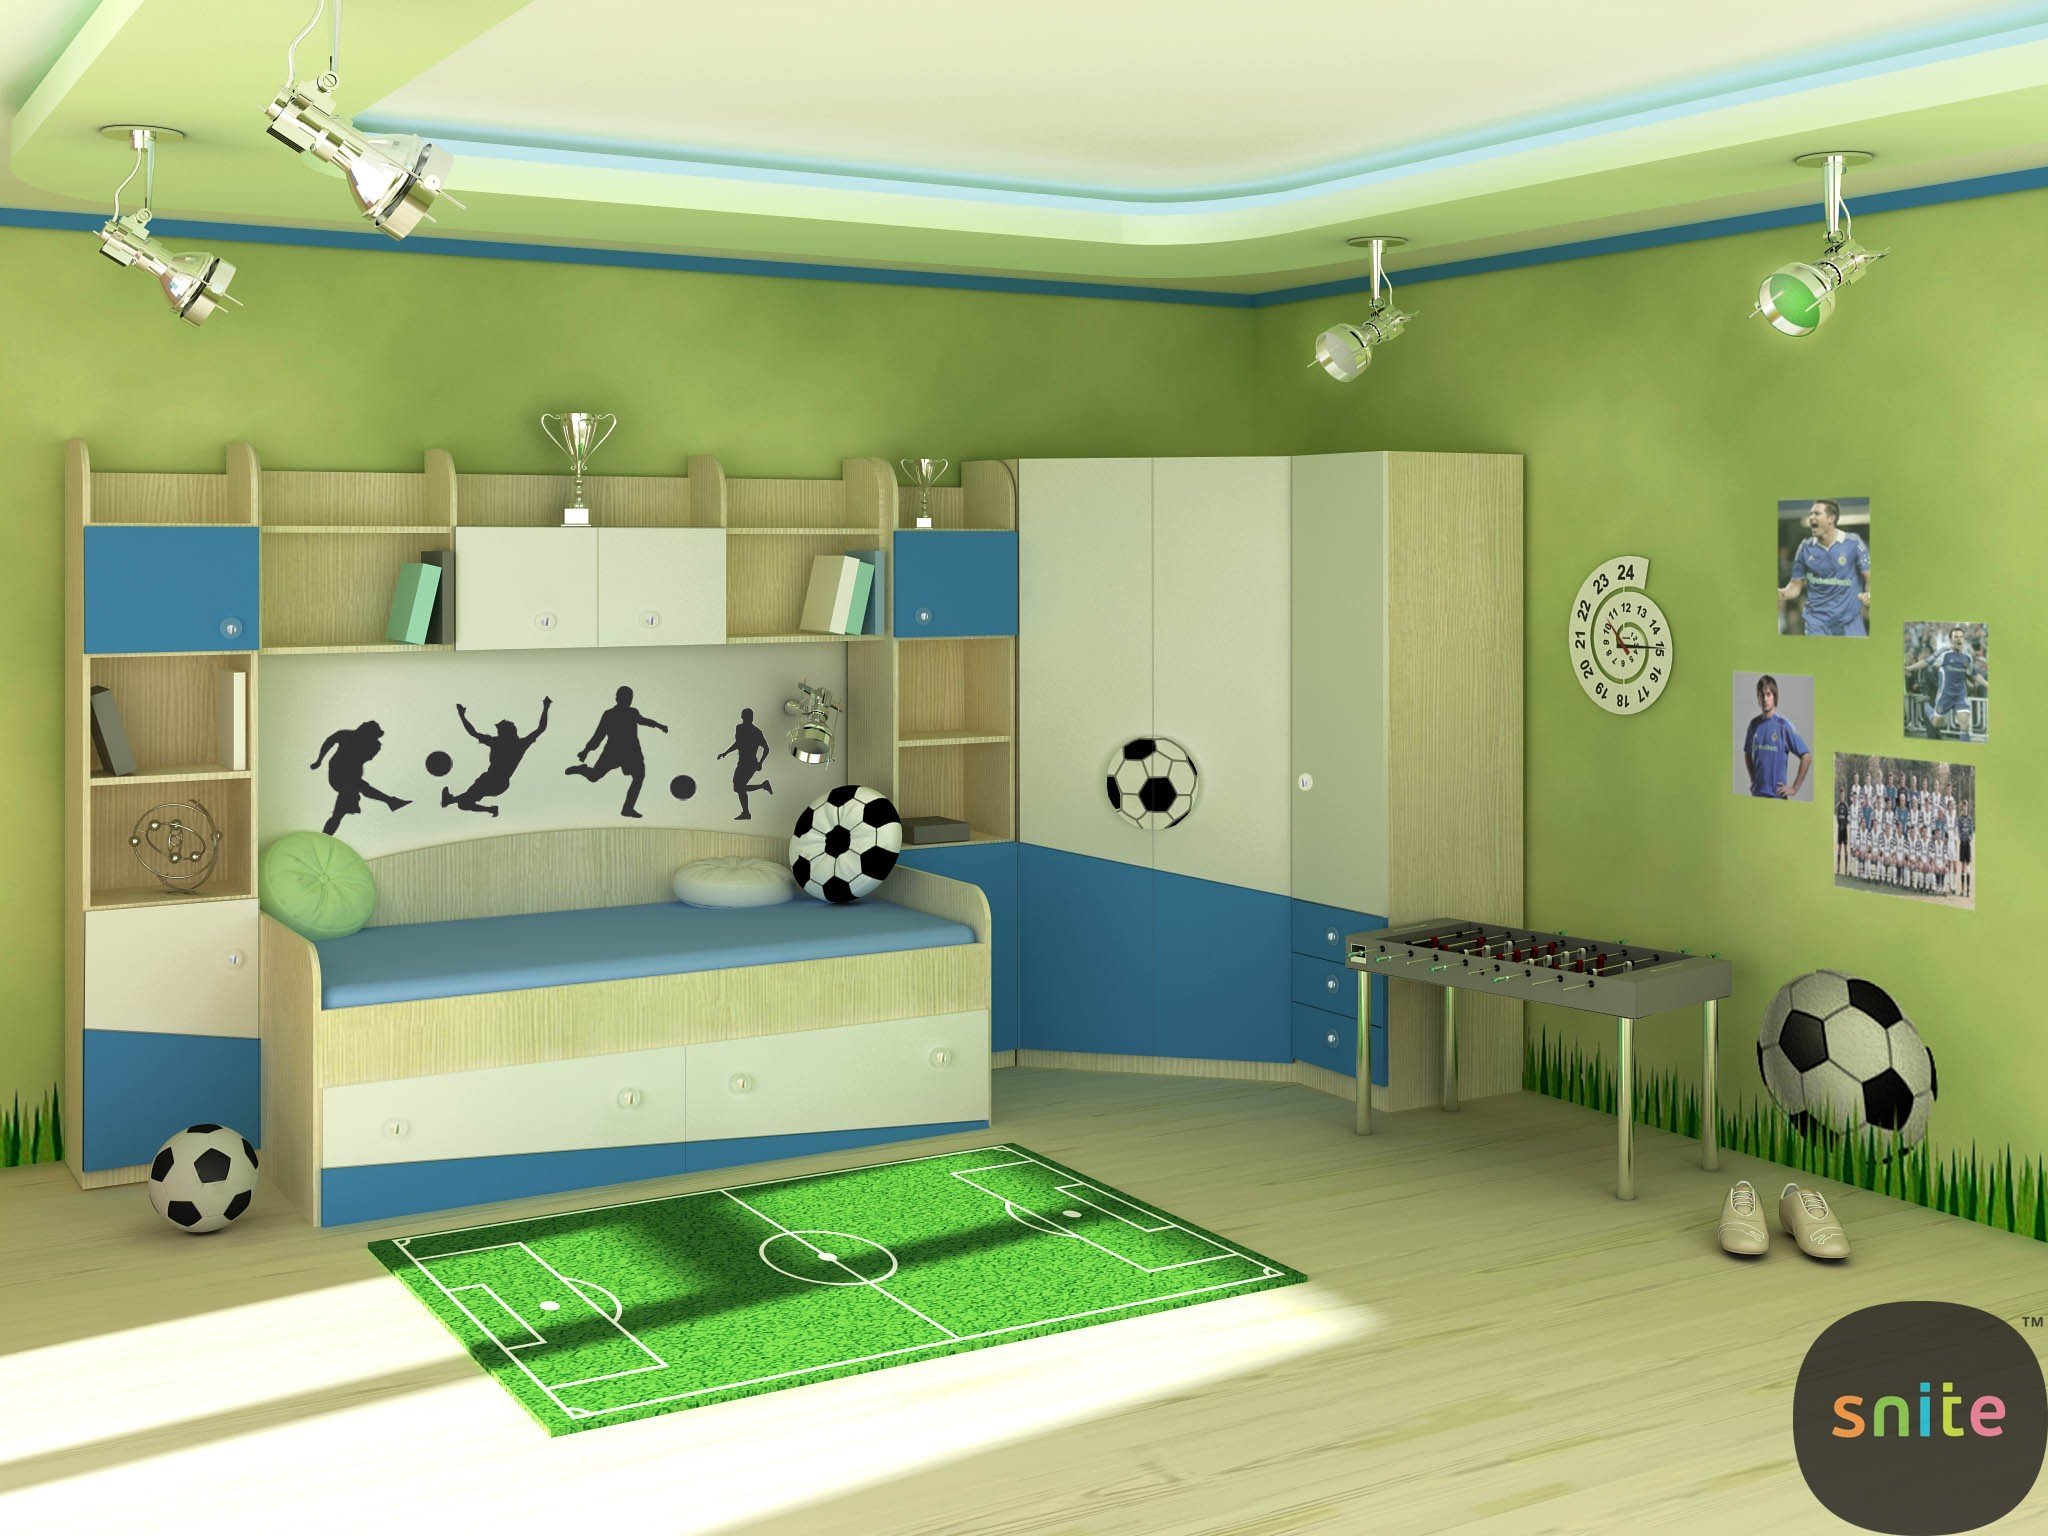 Детская комната в стиле футбола (34 фото)